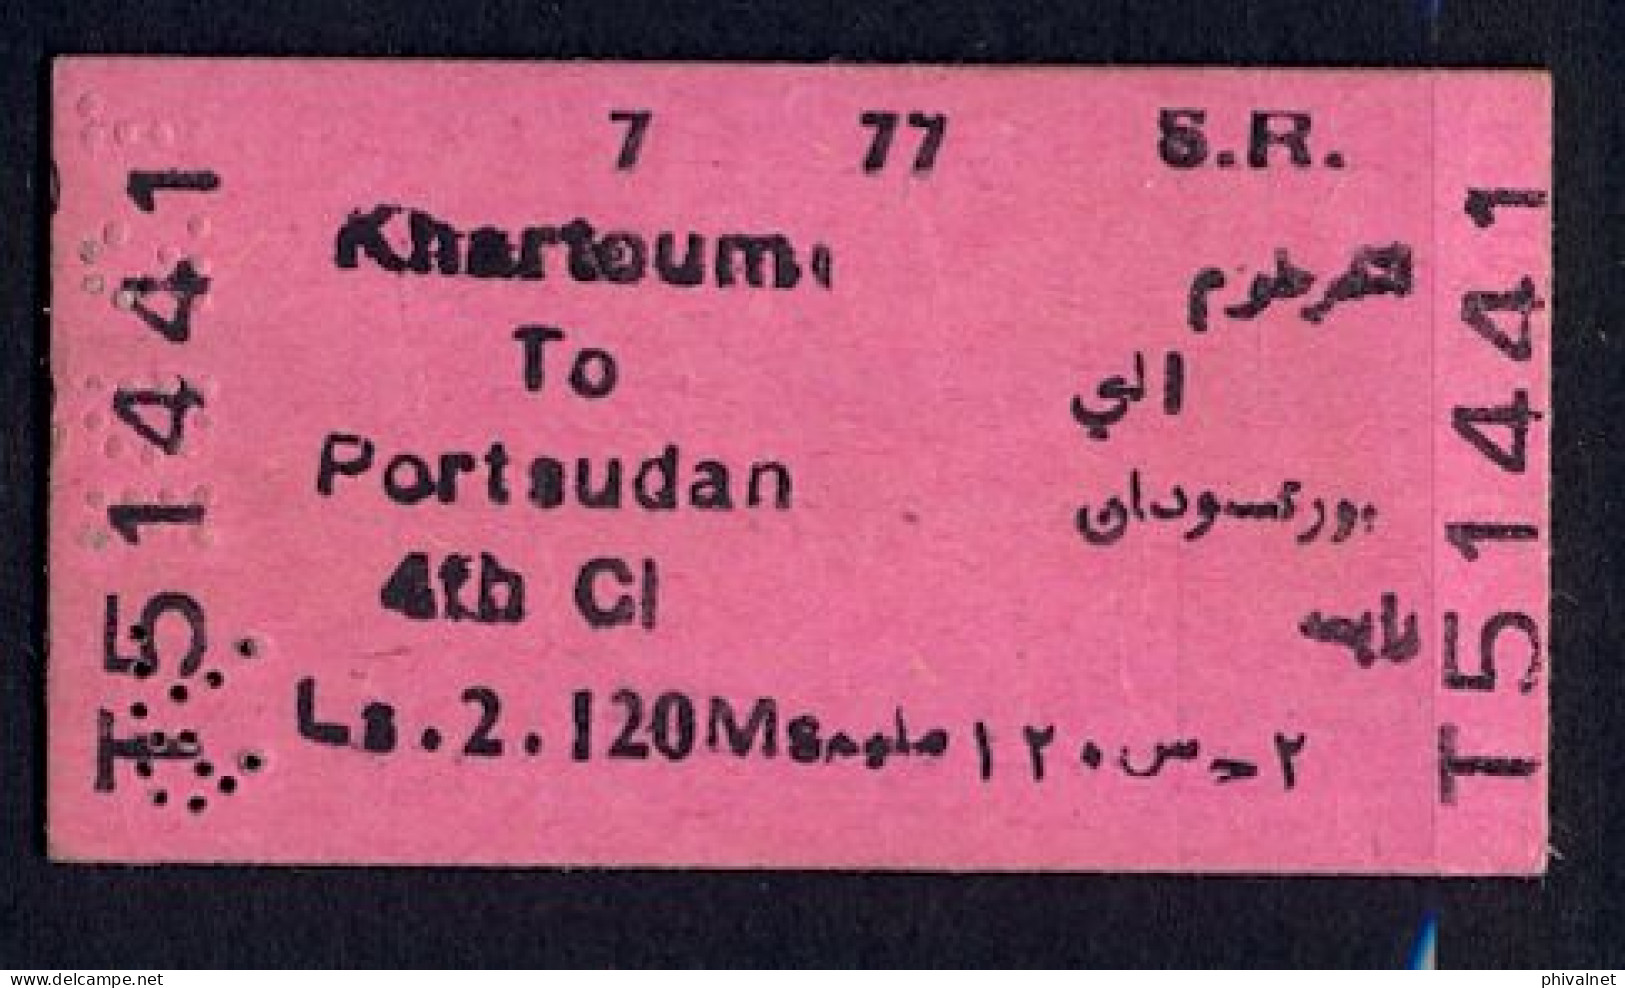 SOUDAN / SUDAN , KHARTOUM - PORT SUDAN , TICKET DE FERROCARRIL , TREN , TRAIN , RAILWAYS - World